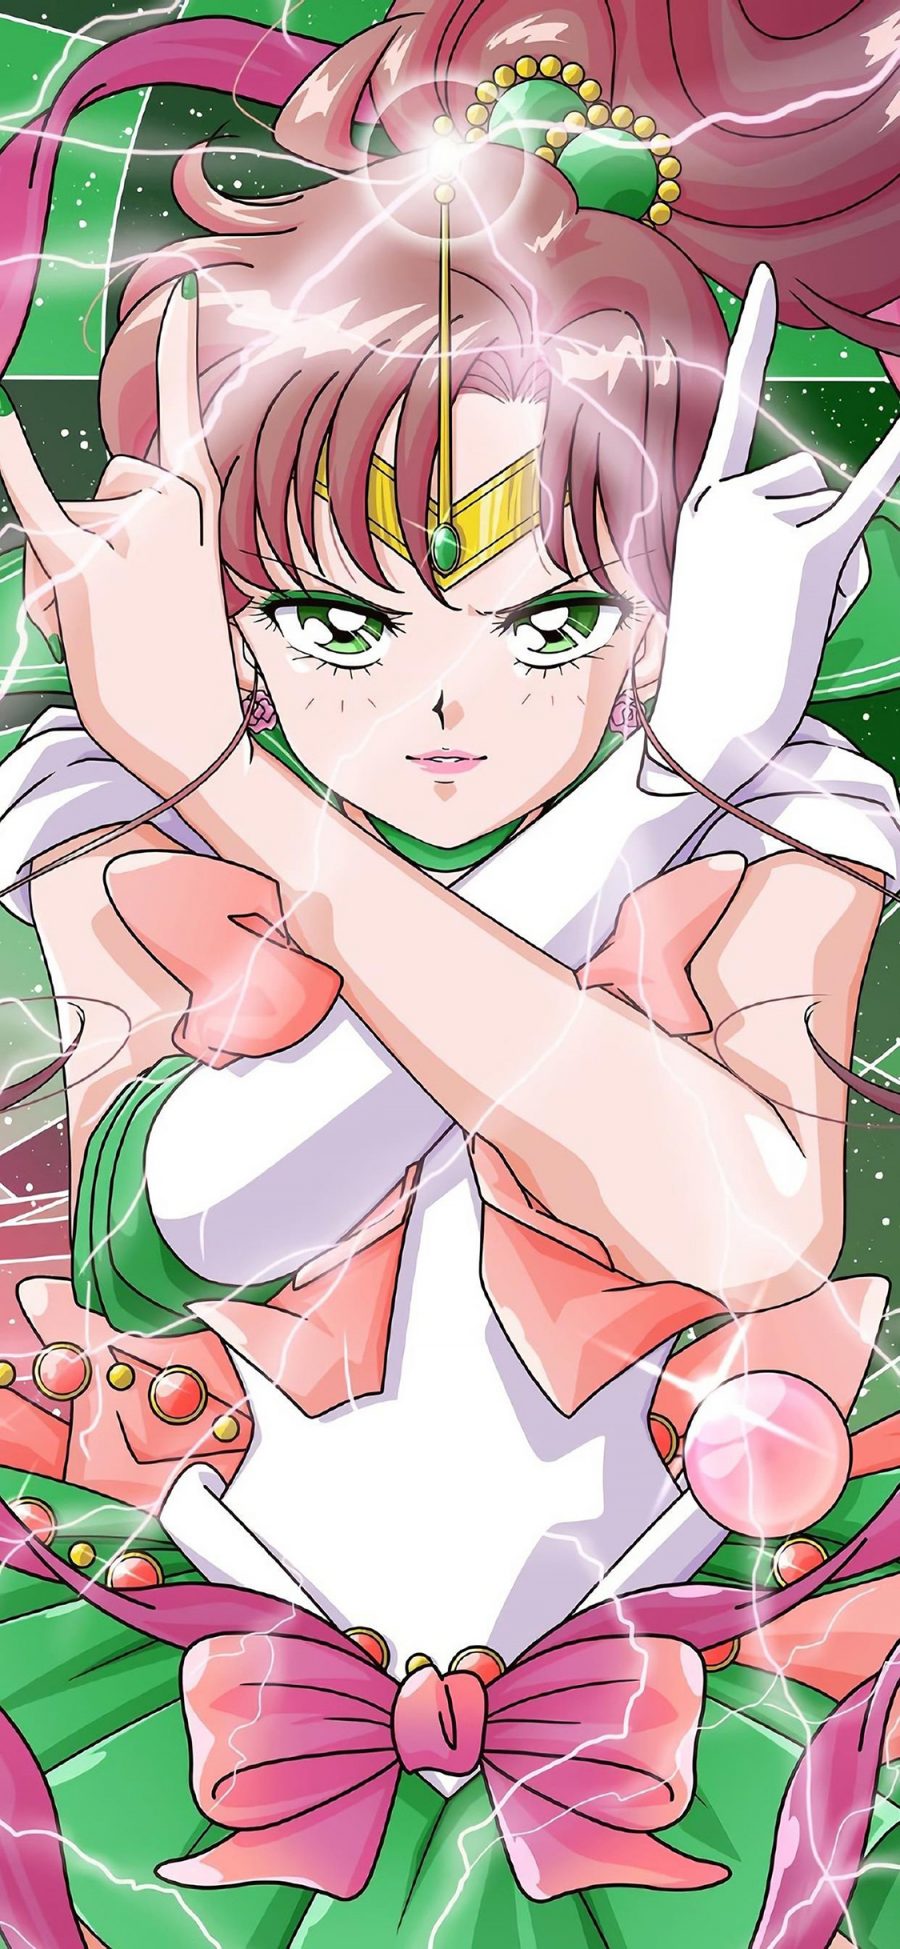 [2436×1125]水手木星 日本 动画 美少女战士 苹果手机动漫壁纸图片